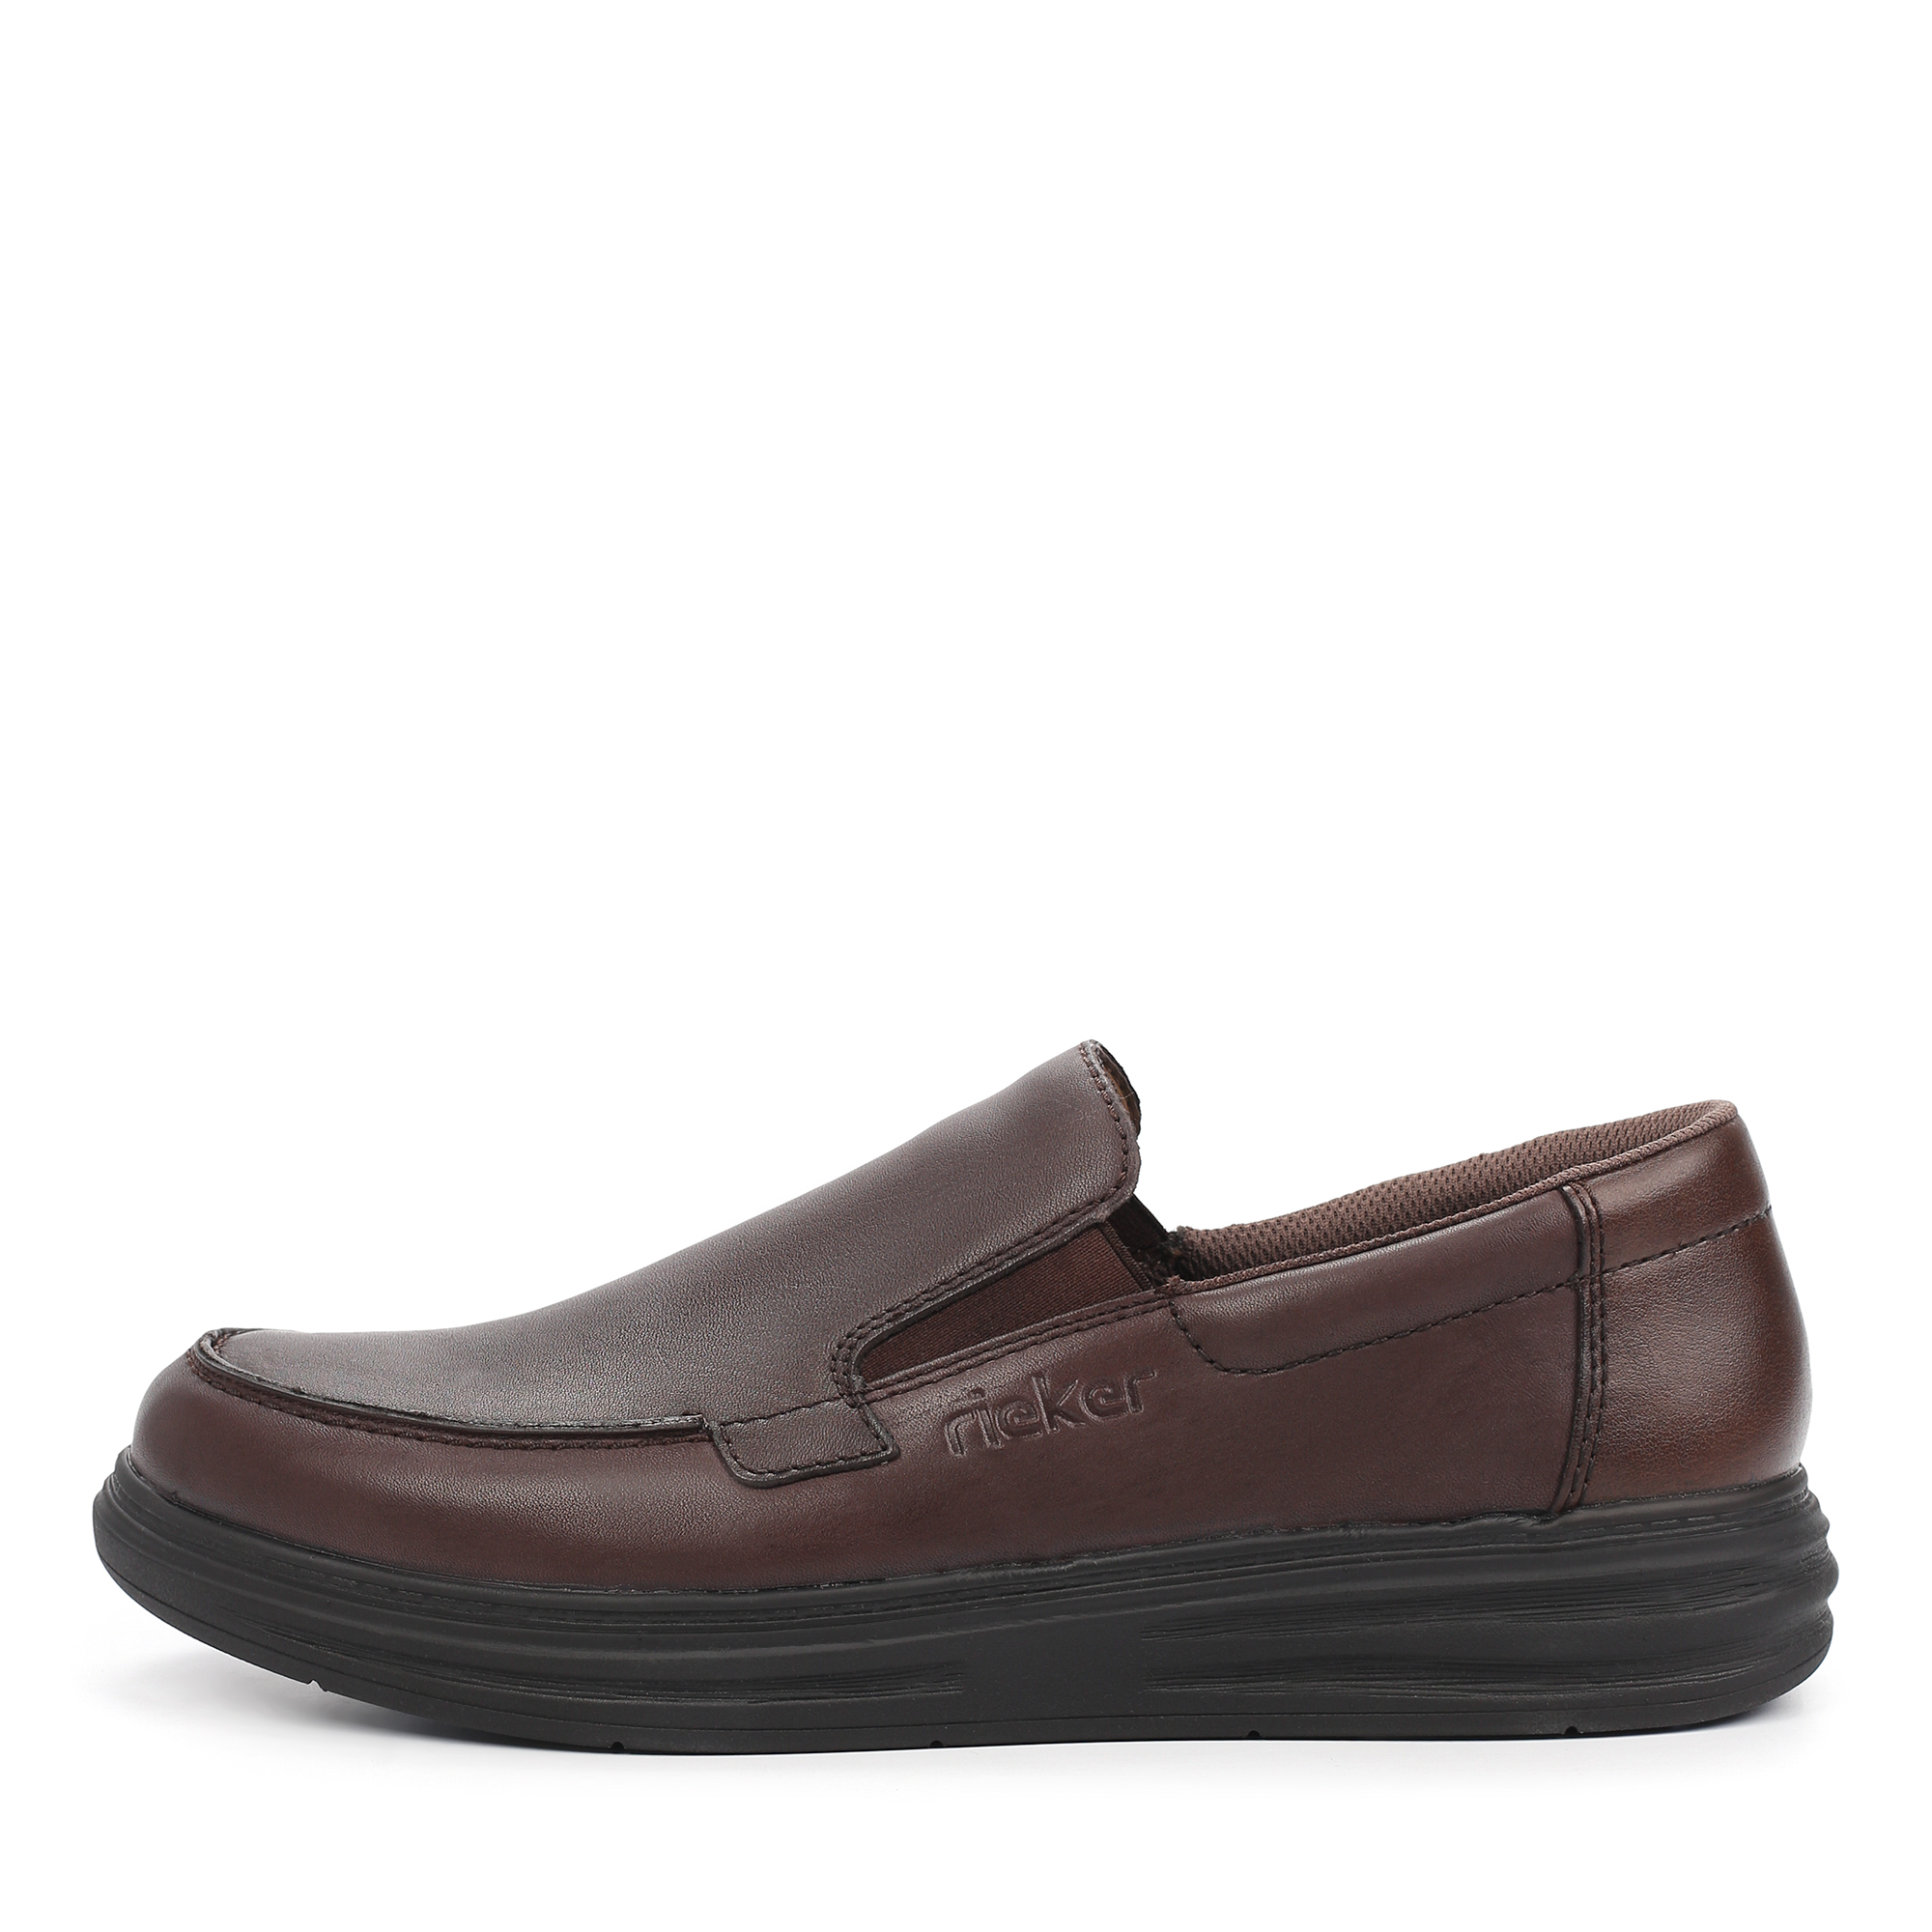 Туфли/полуботинки Rieker B6353-25, цвет коричневый, размер 41